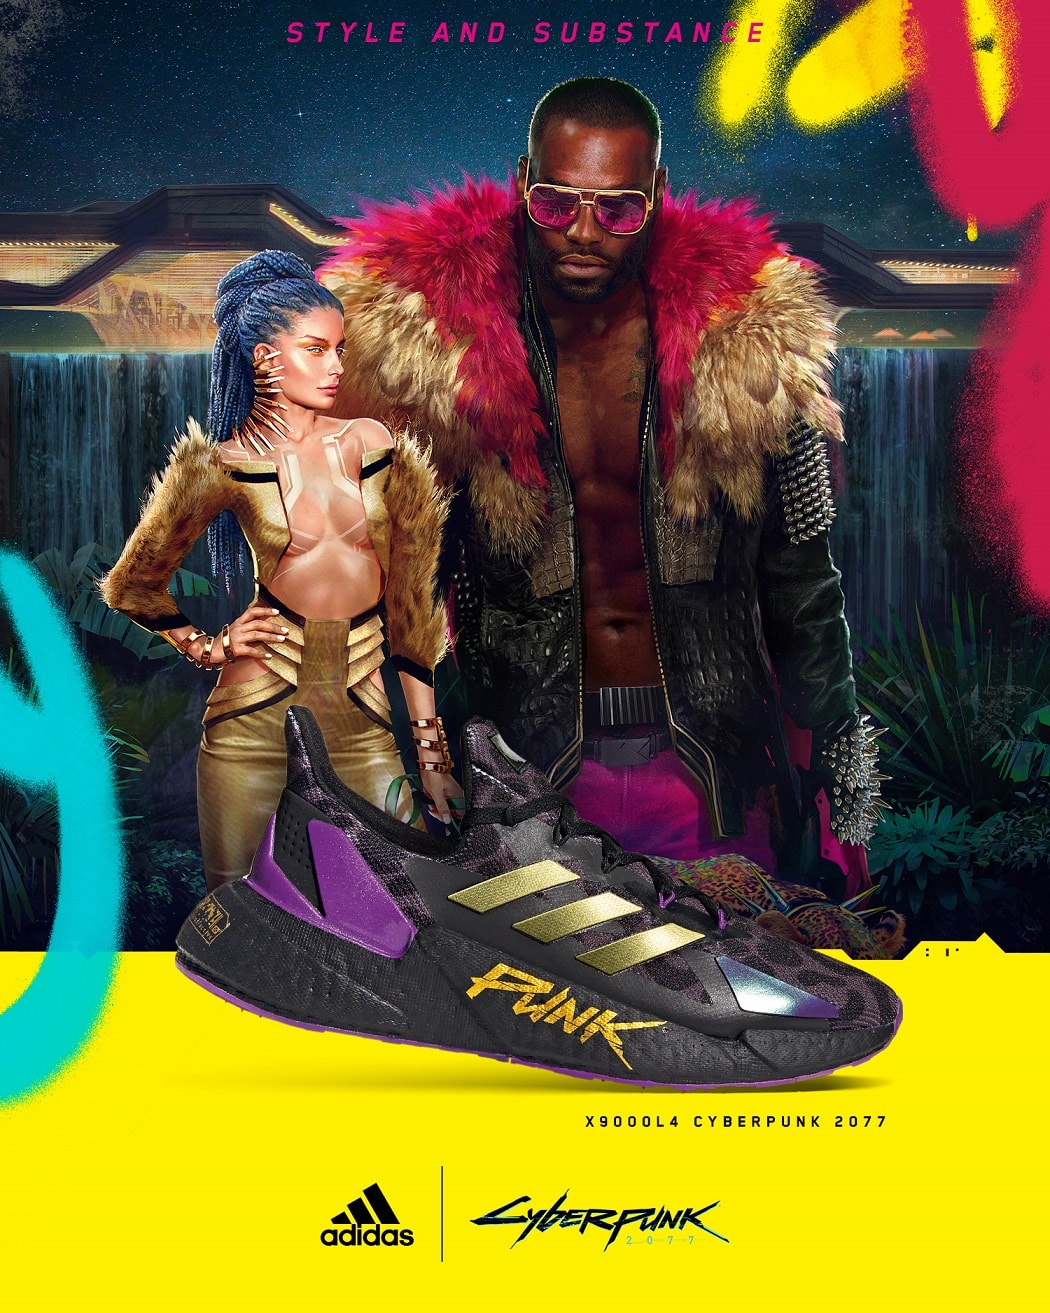 adidas x《Cyberpunk 2077》最新聯名鞋款發售情報公開